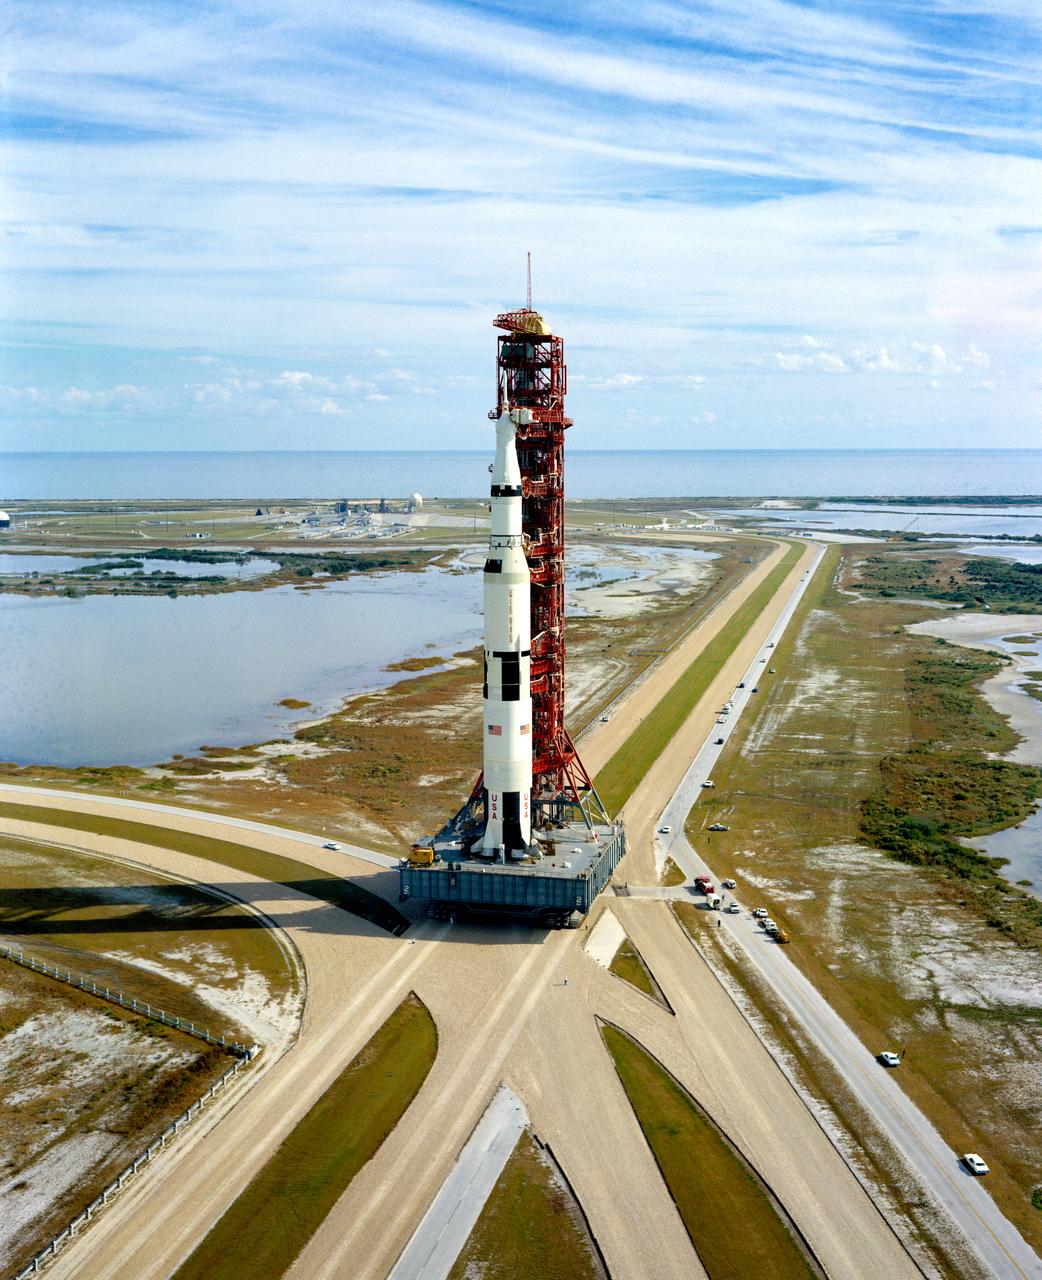 Saturn V stack